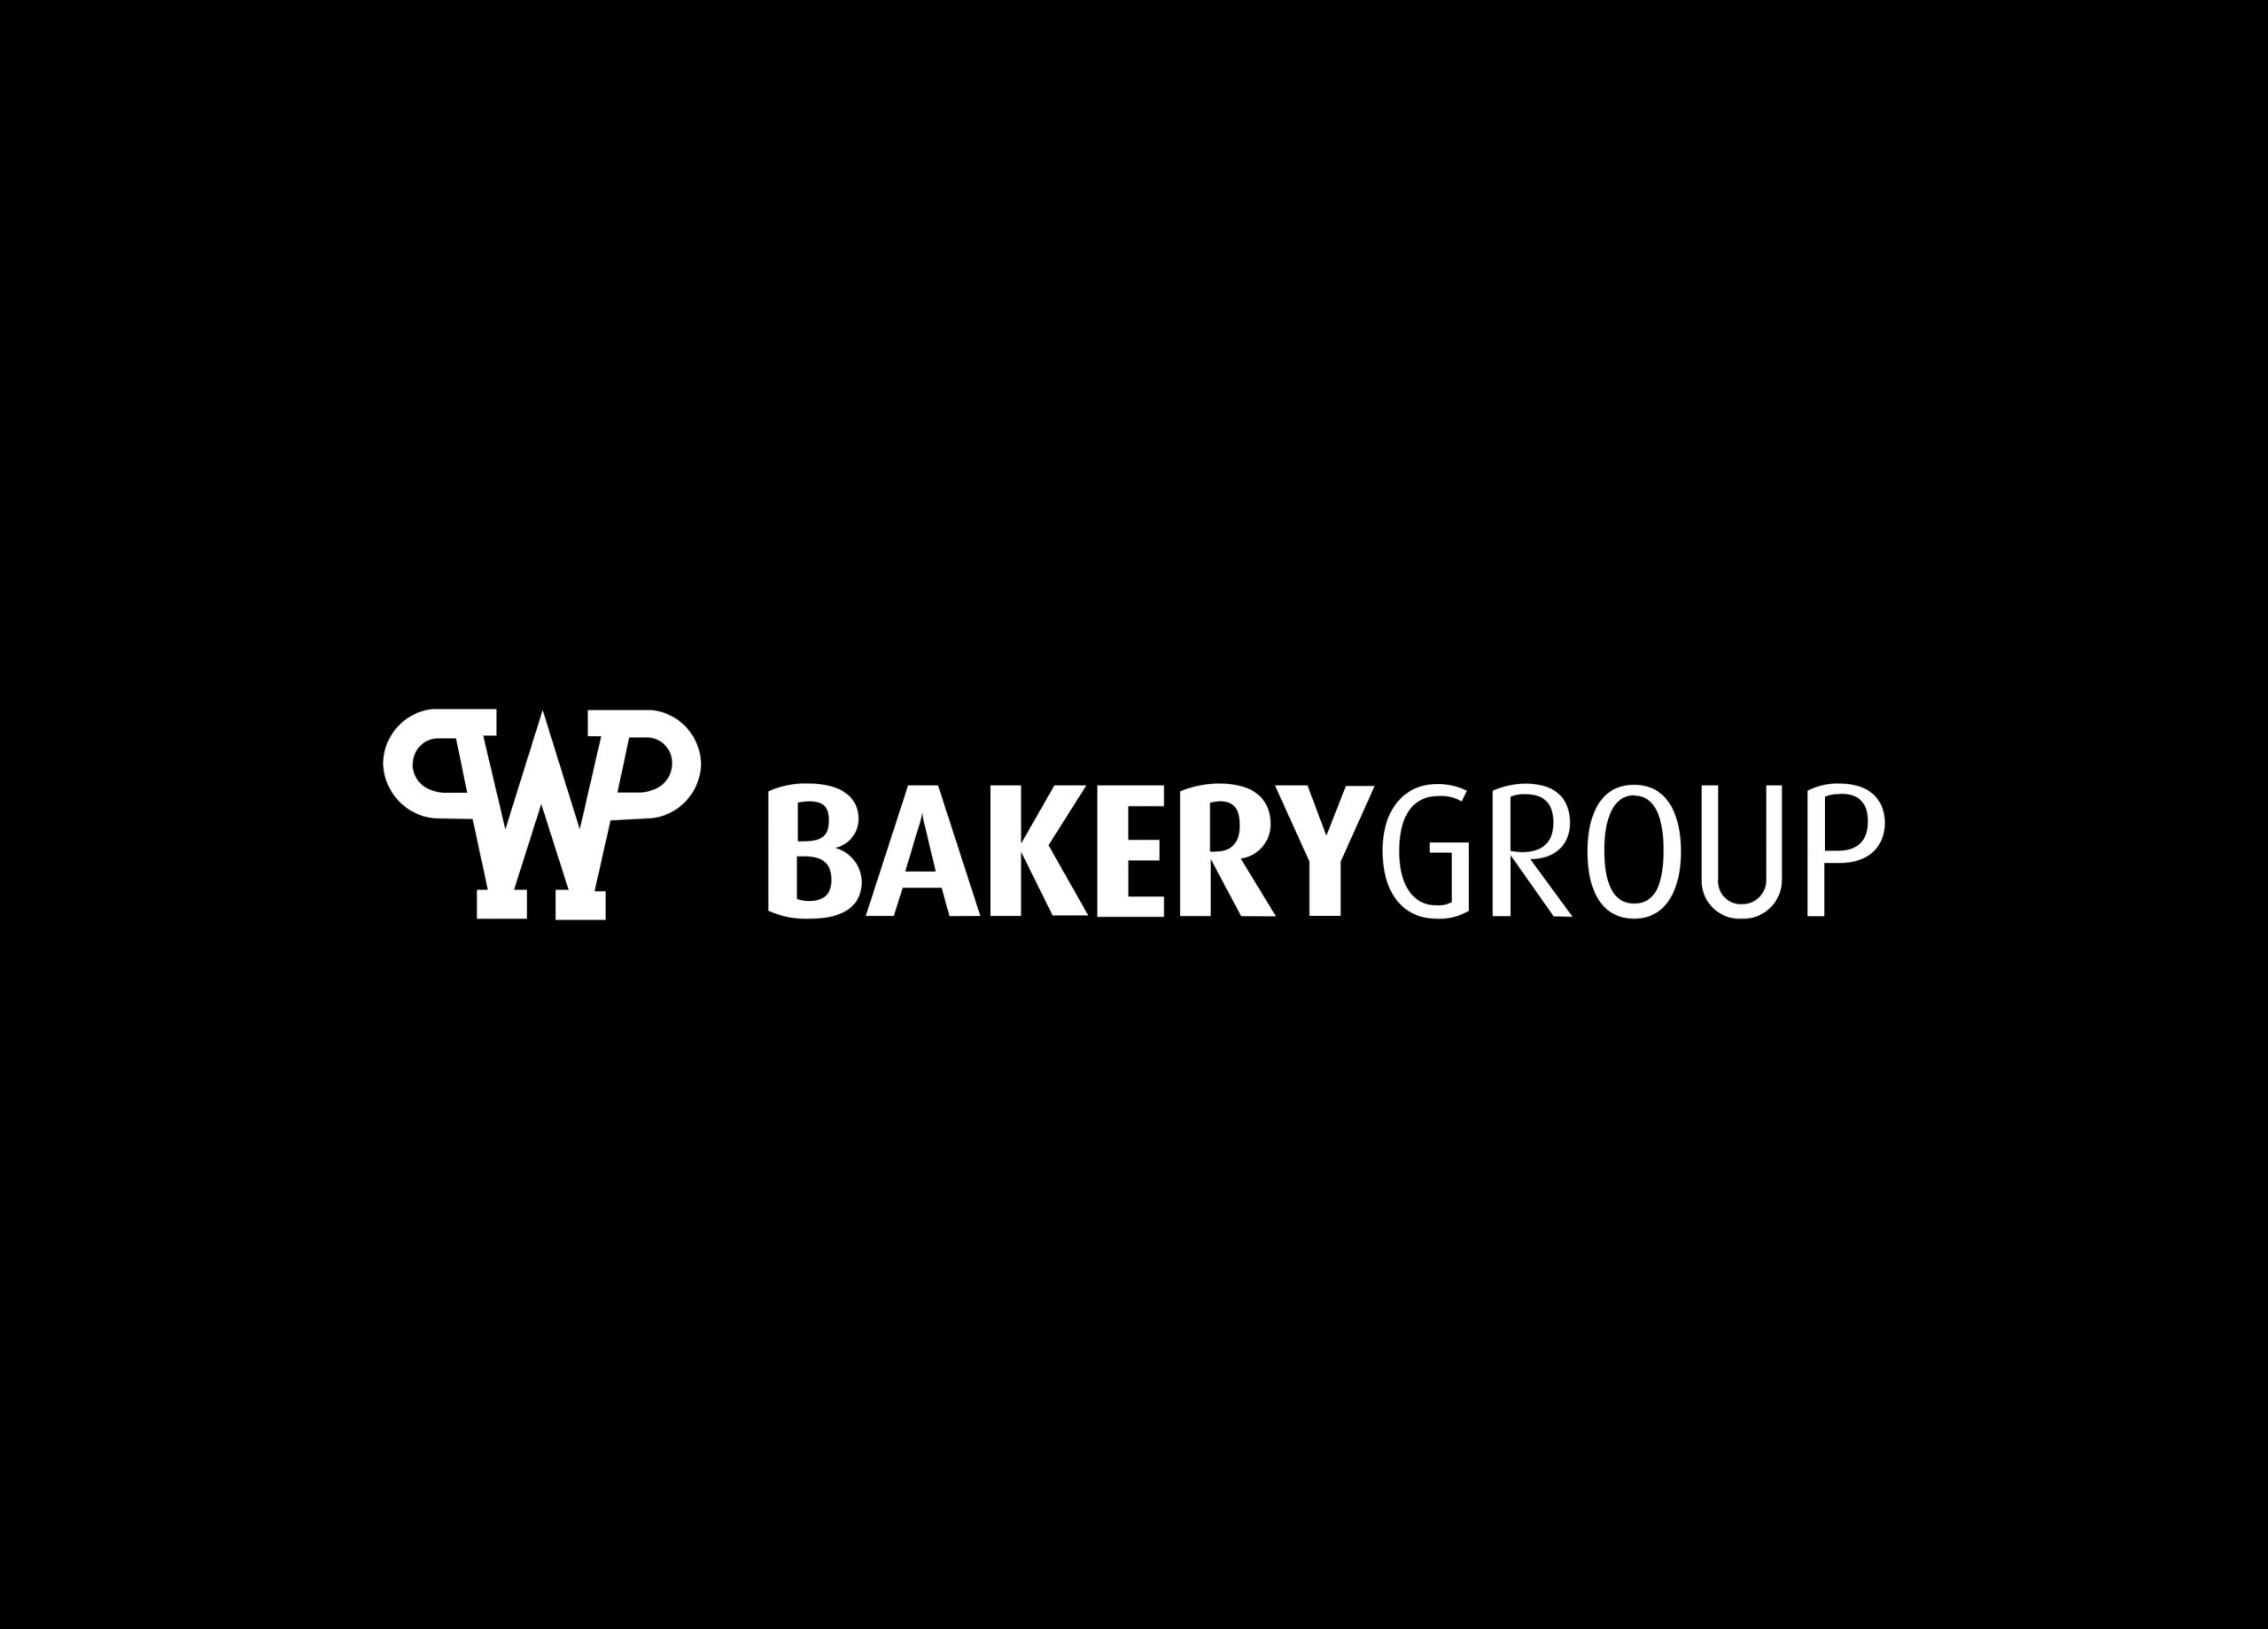 Logo WP Bakerygroup.